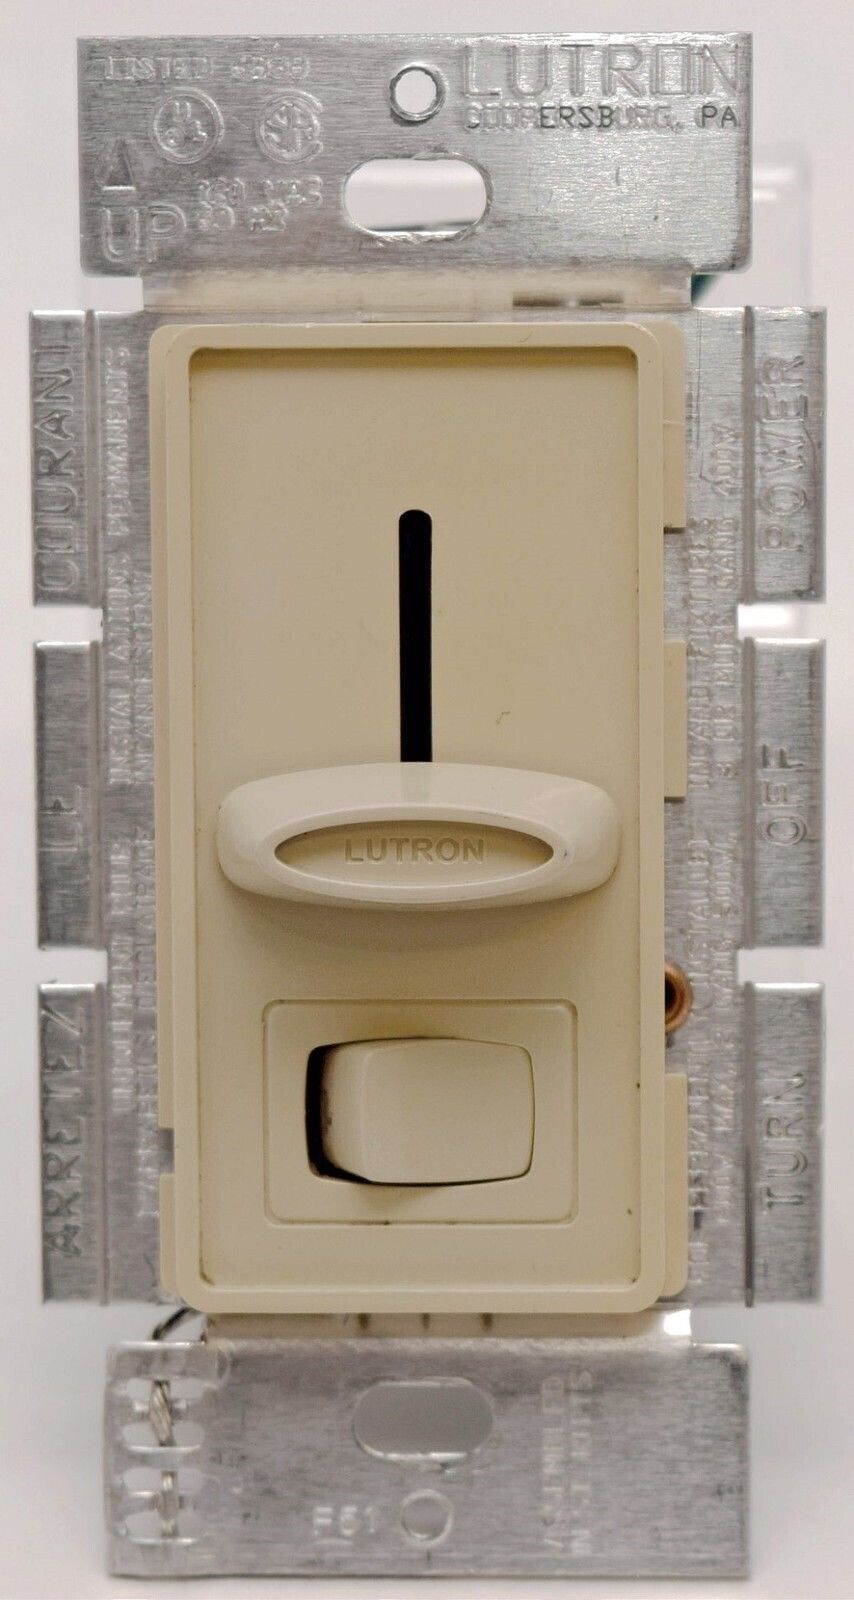 Primary image for Lutron Skylark S-603PG-IV Ivory Wall Eco-Dimmer Light Switch 600w slide halogen